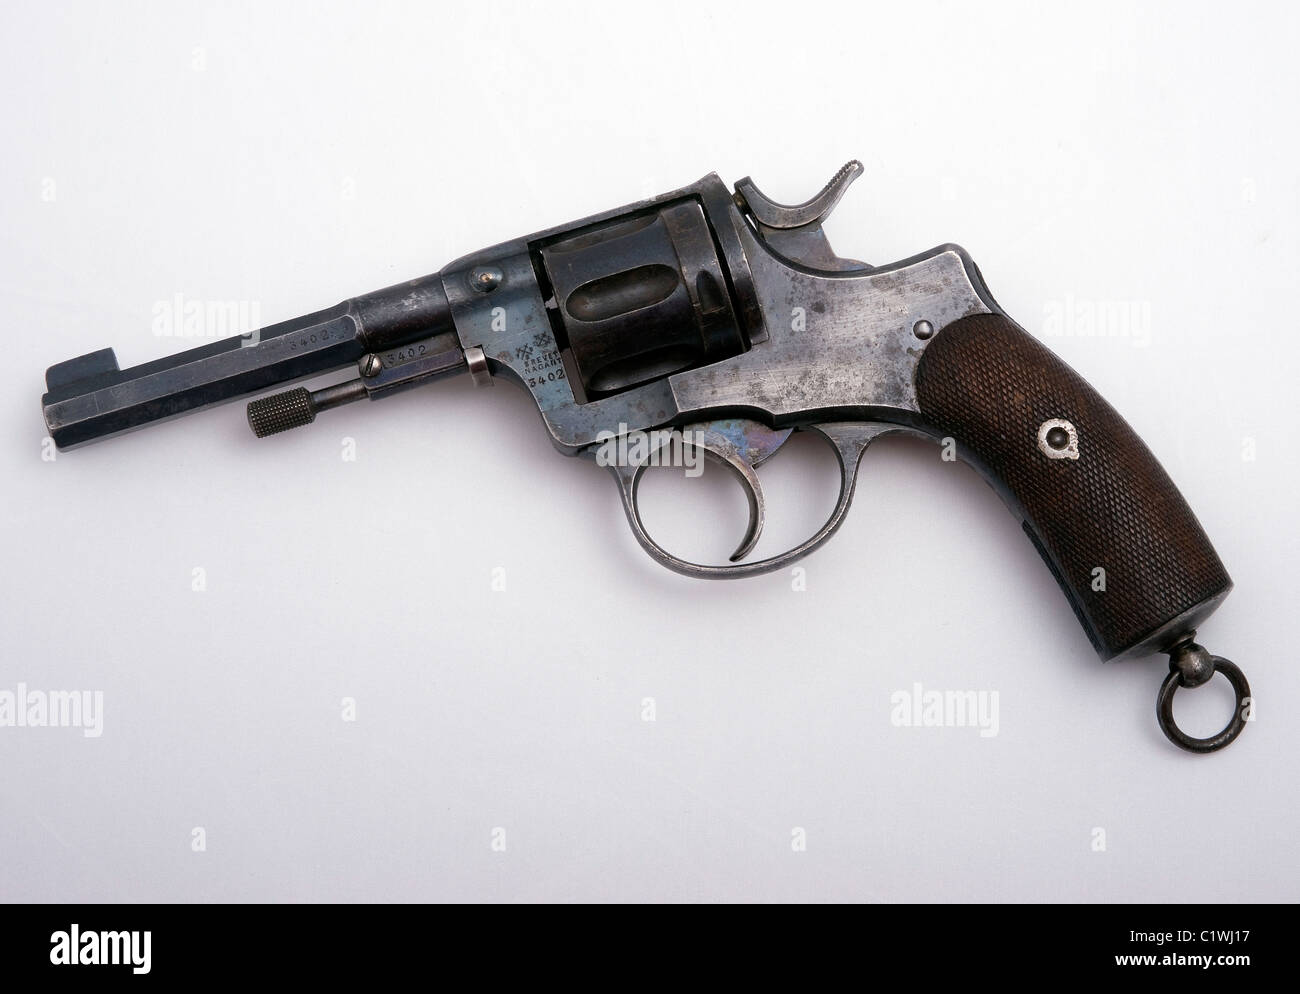 Nagant 1895 revolver in 7.62x38mm caliber Foto Stock